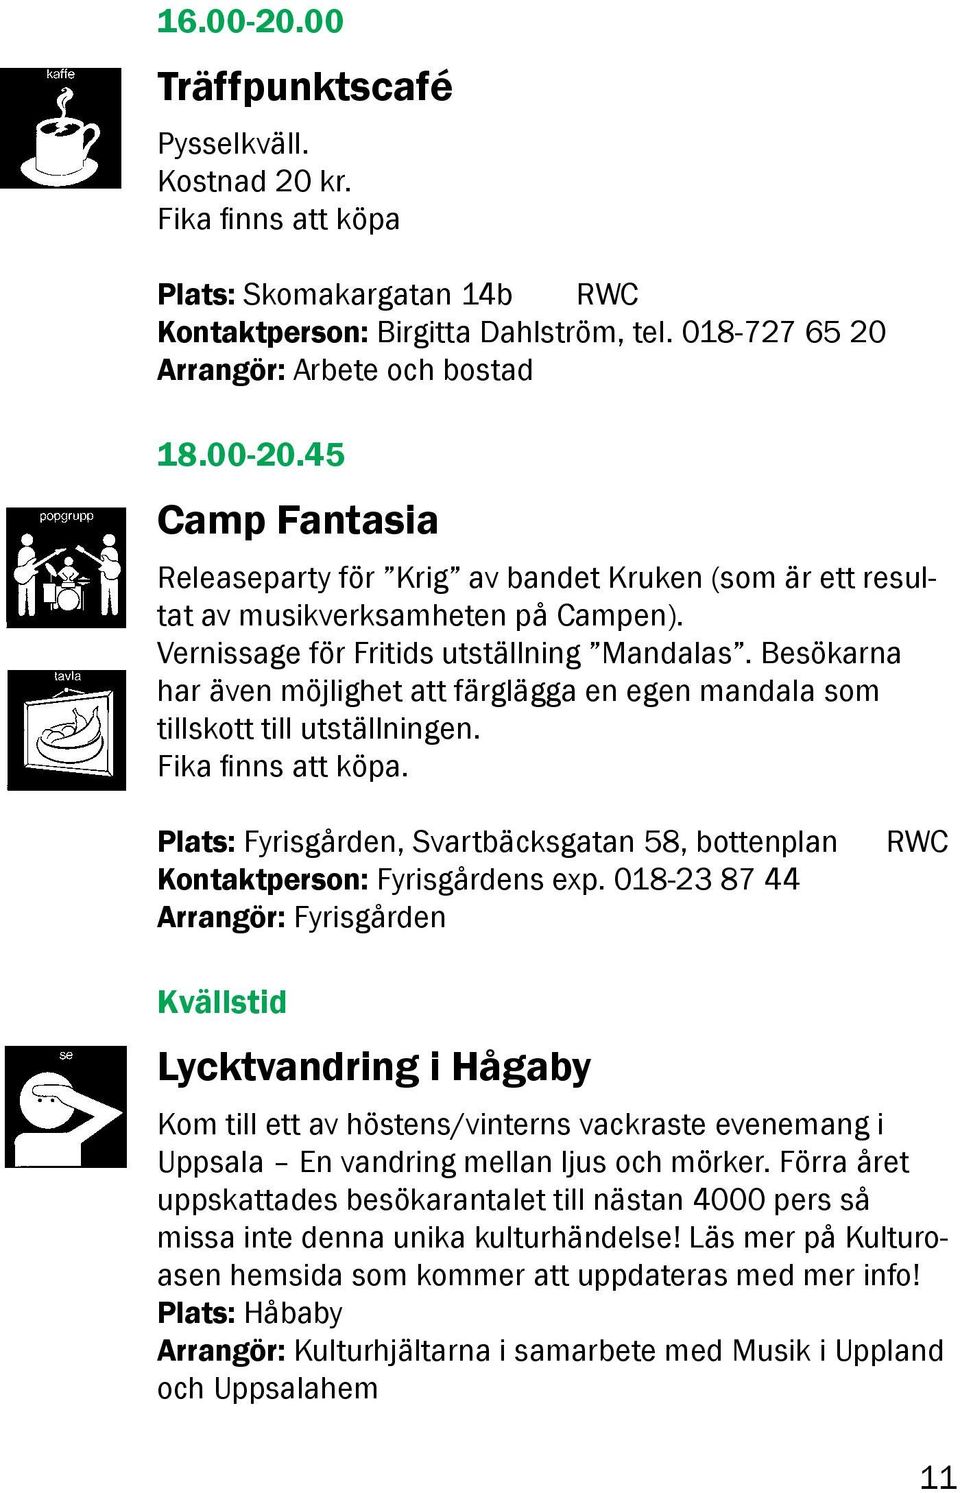 Plats: Fyrisgården, Svartbäcksgatan 58, bottenplan Kontaktperson: Fyrisgårdens exp.